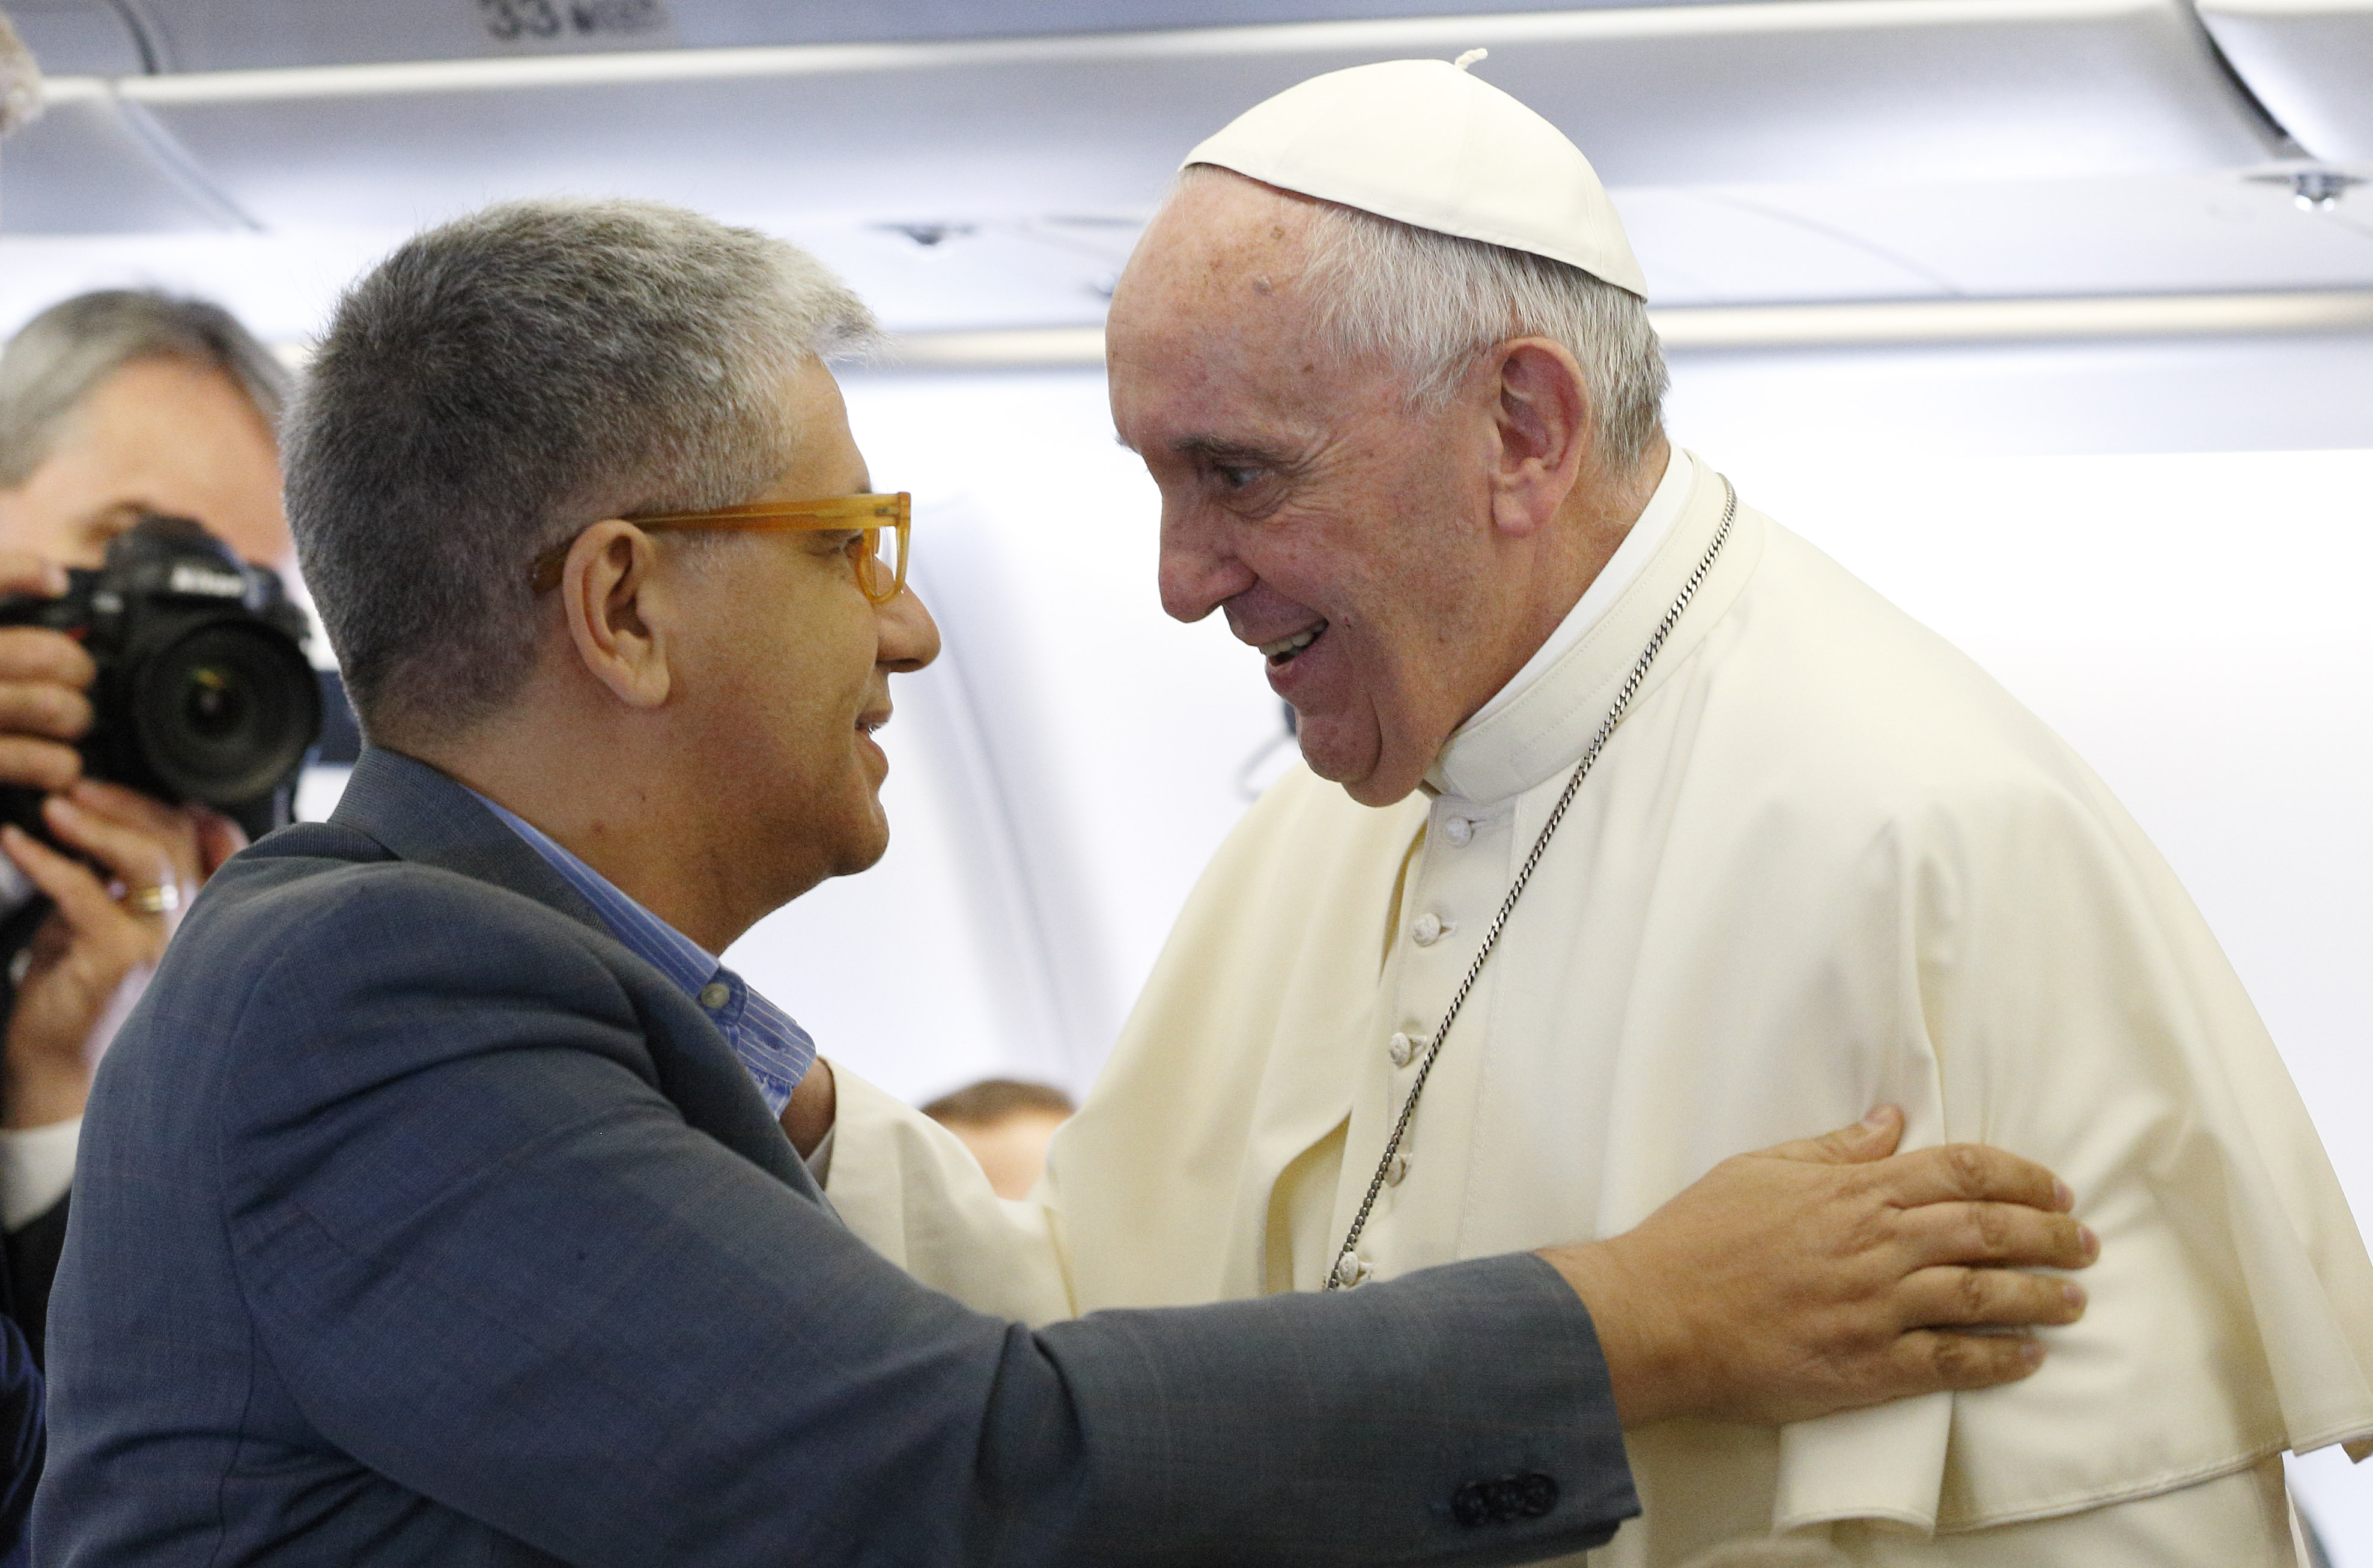 Vatican official criticises judgmental Catholic media